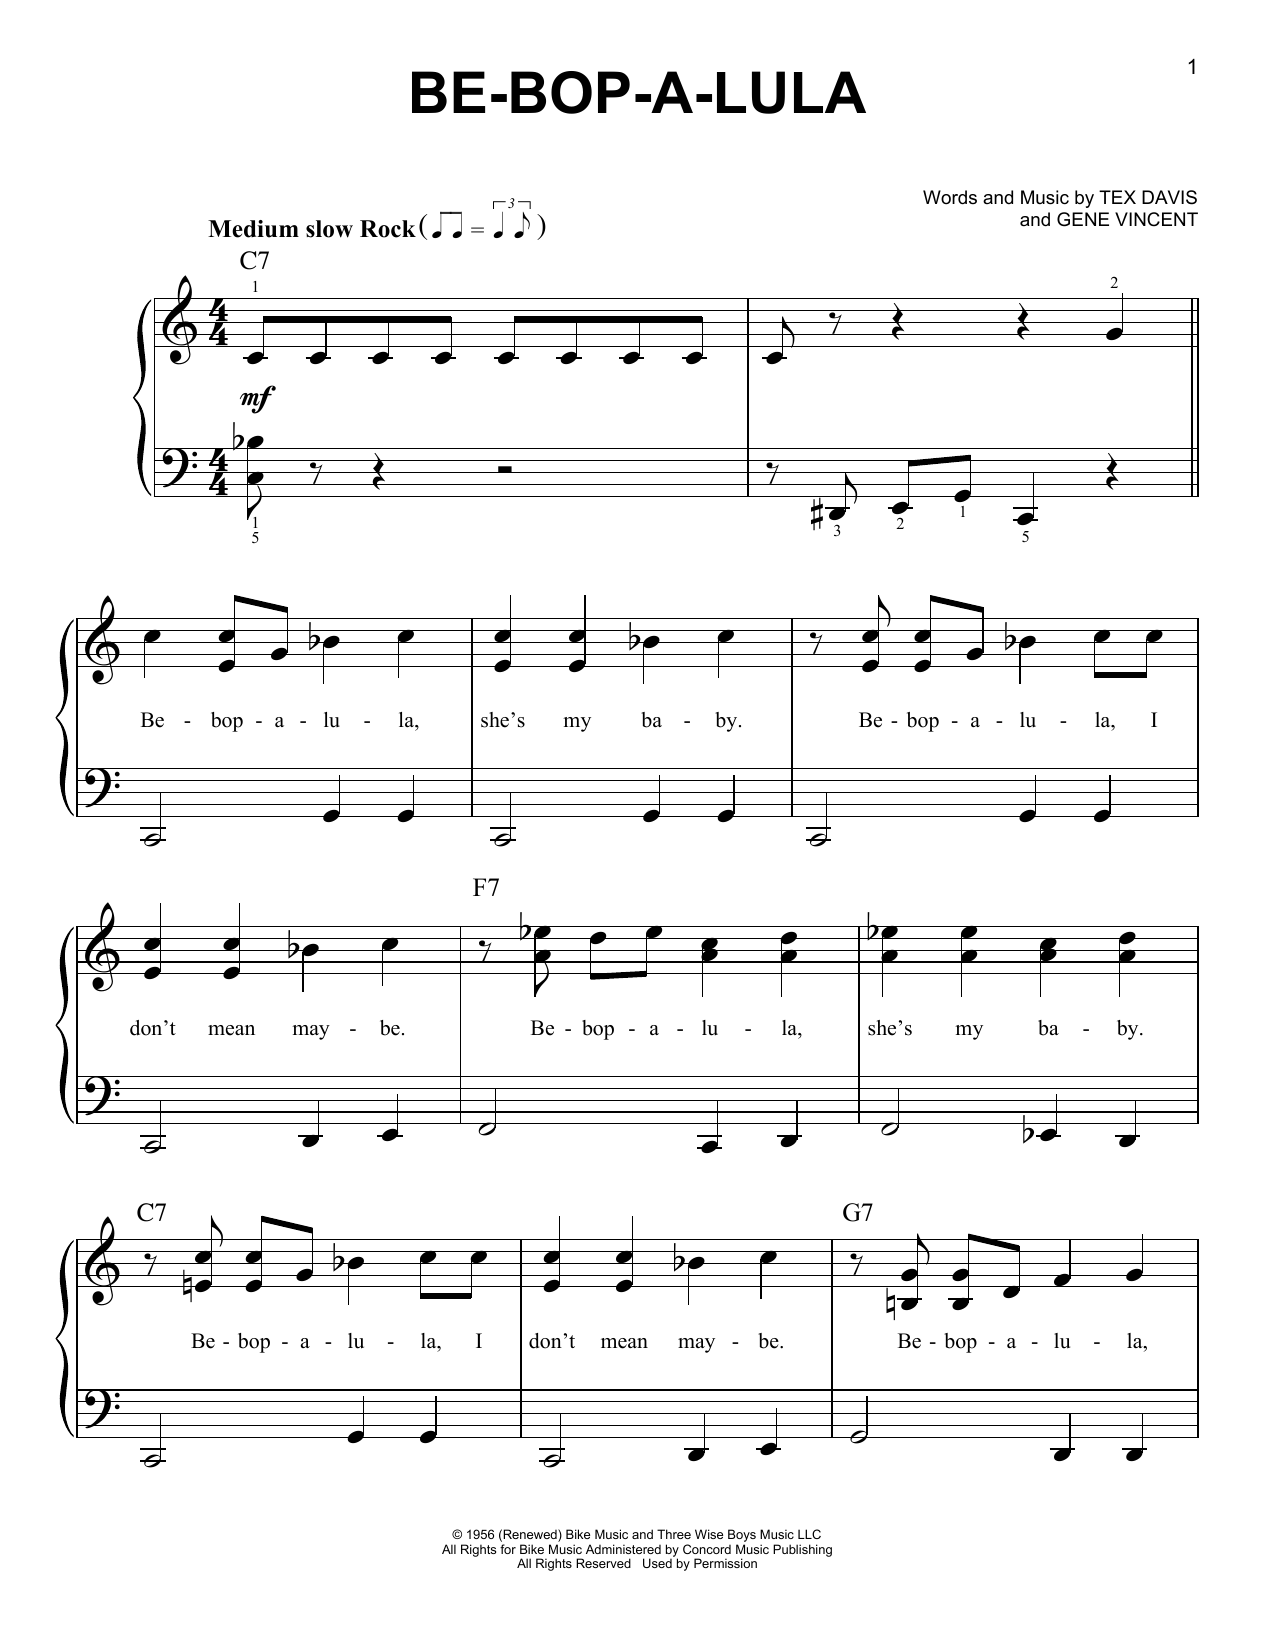 Gene Vincent Be-Bop-A-Lula Sheet Music Notes & Chords for Lyrics & Chords - Download or Print PDF